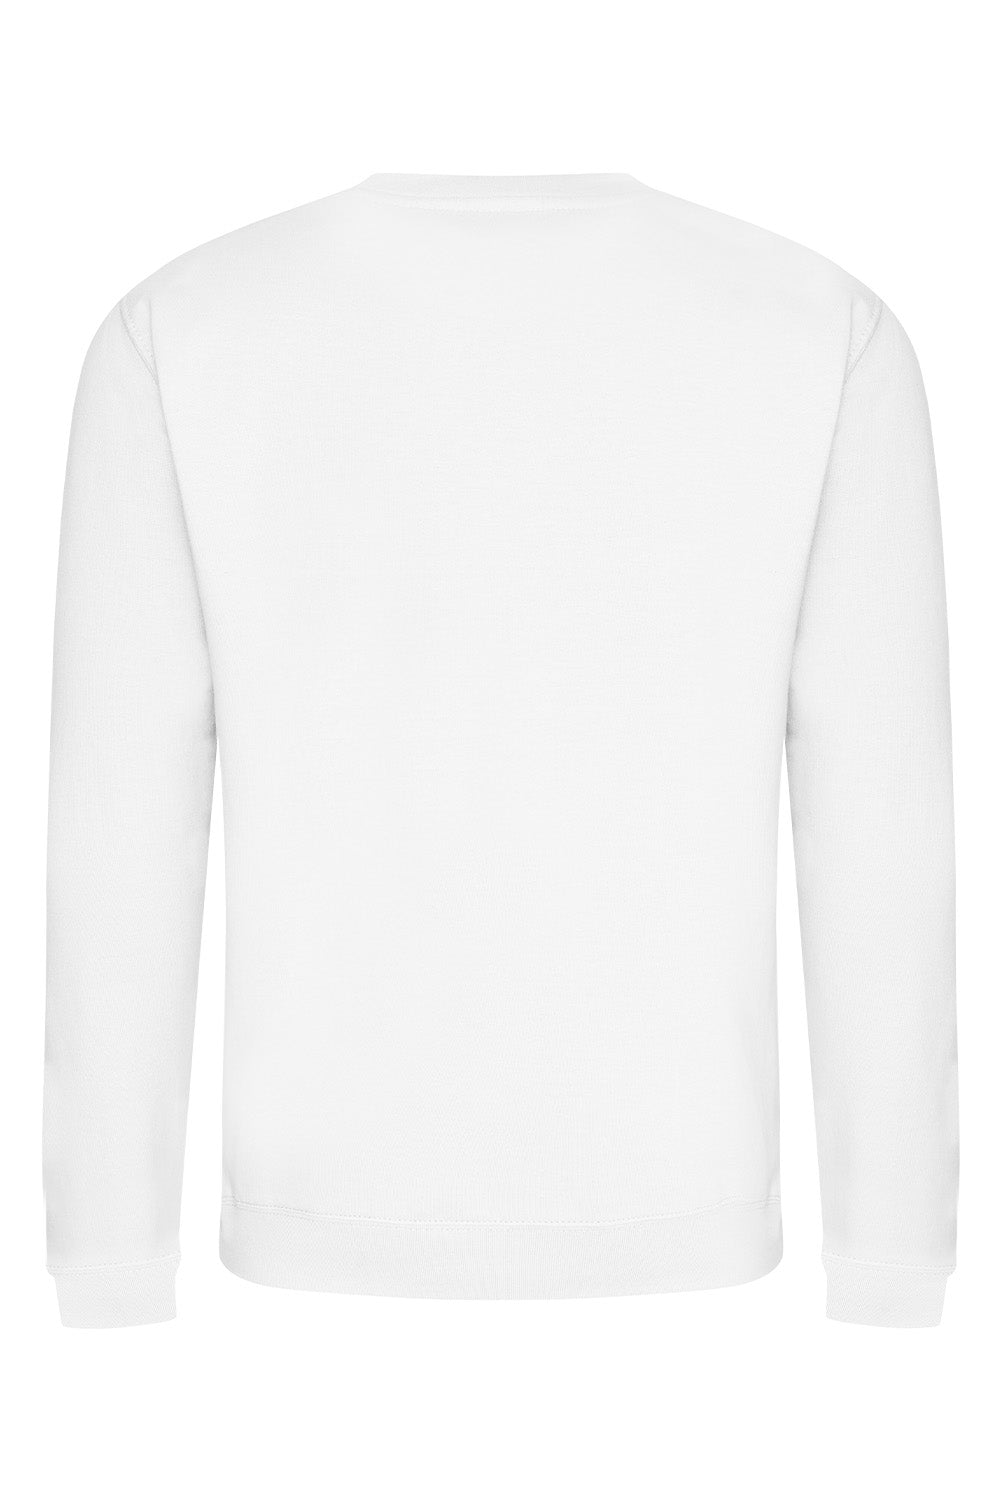 Sakura Sweatshirt In Arctic White (Custom Pack)